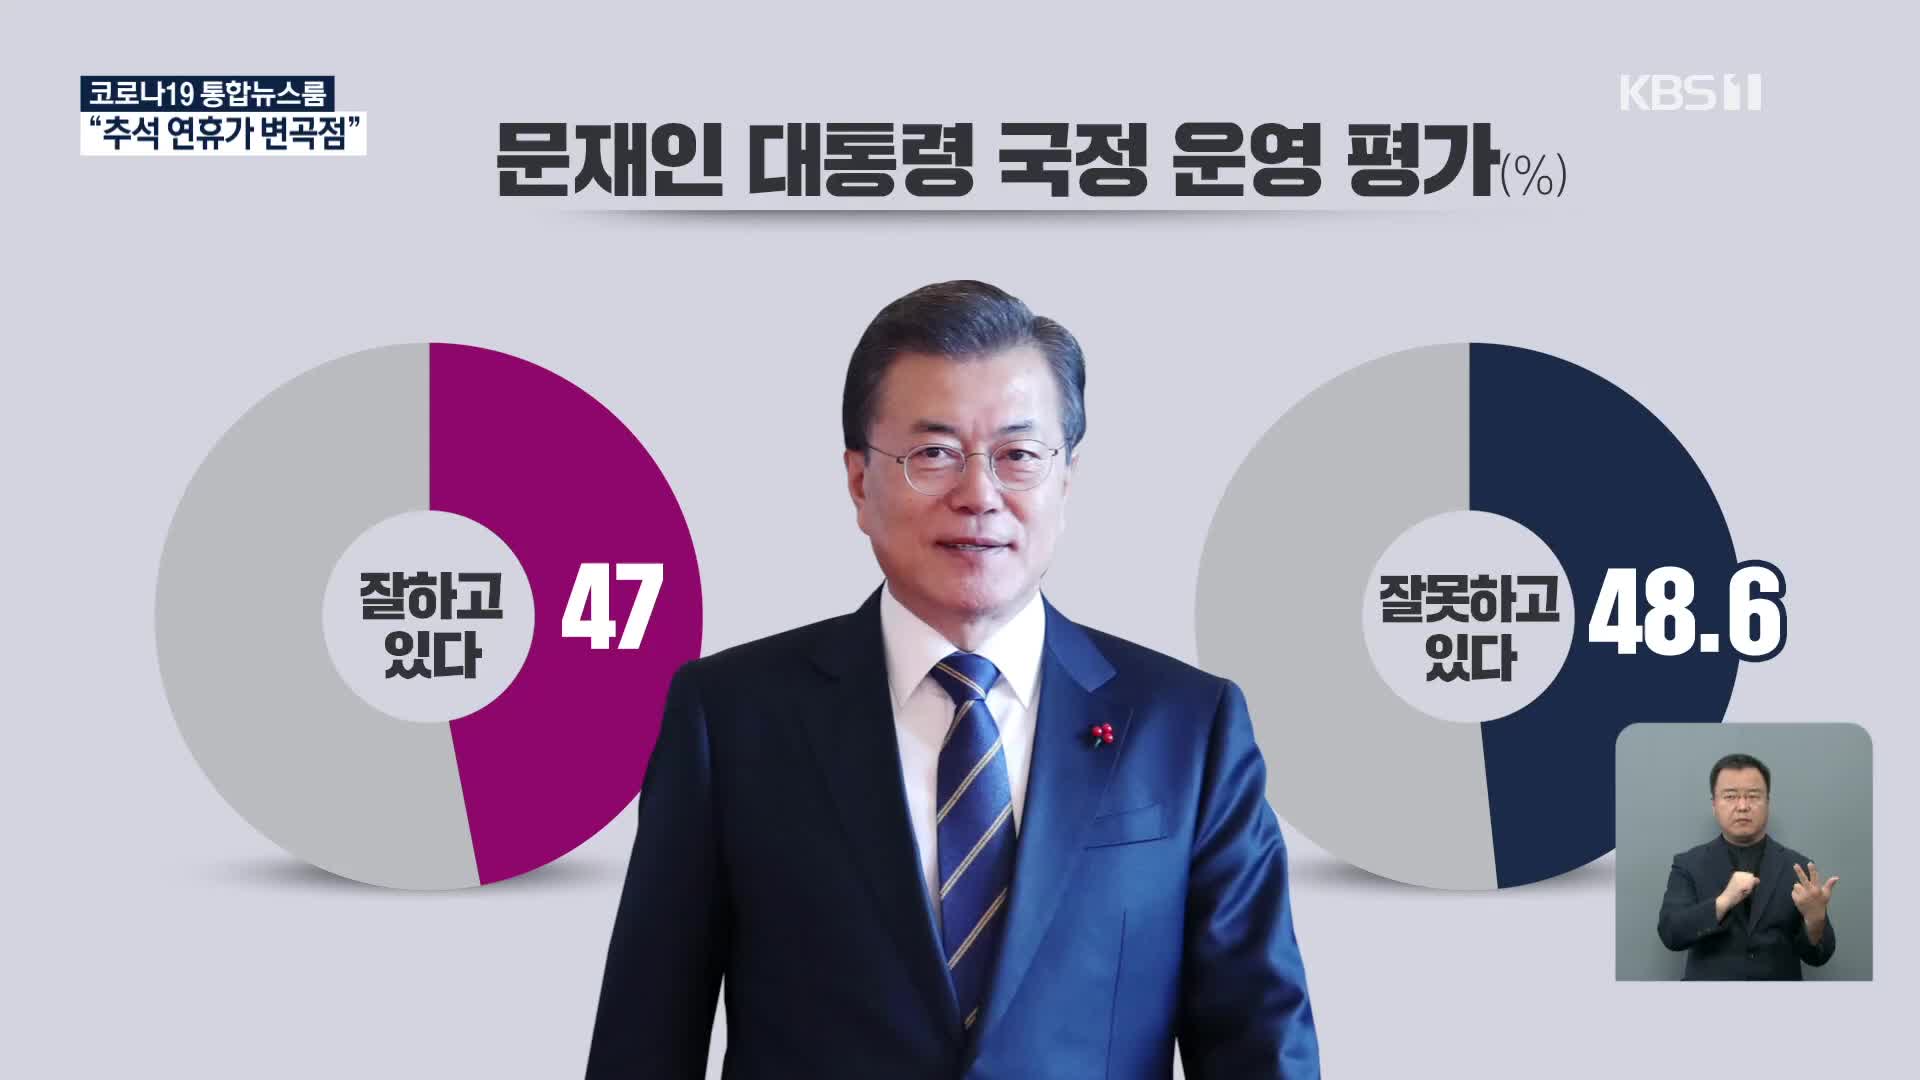 [추석민심]① ‘대통령 국정운영’ 잘한다 47%, 잘못한다 48.6%